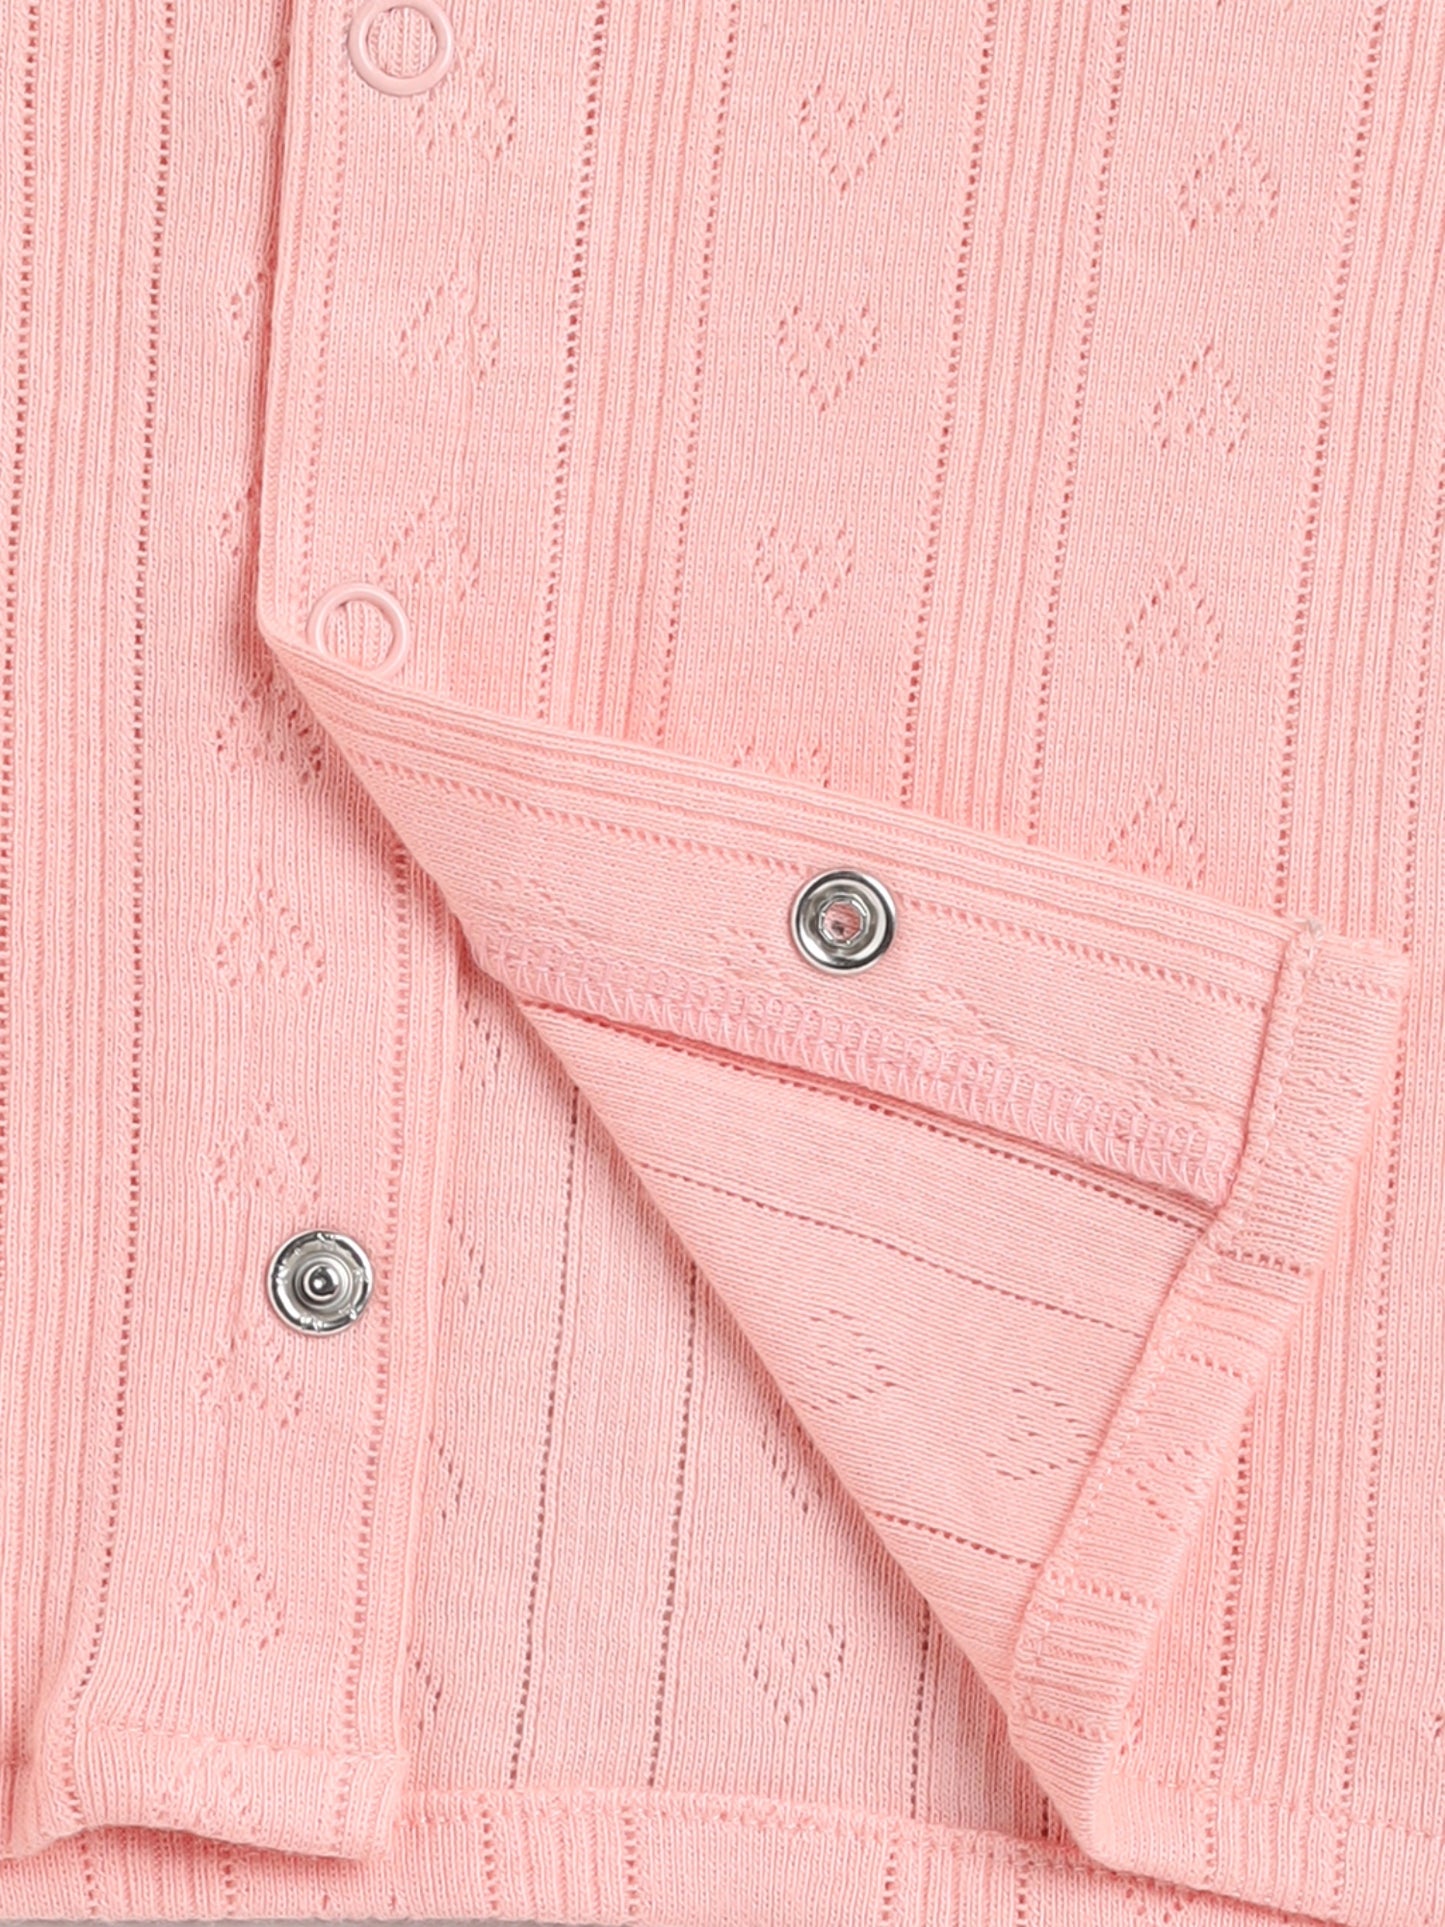 Graphic Peach Half Sleeve Cotton Nightwear Set